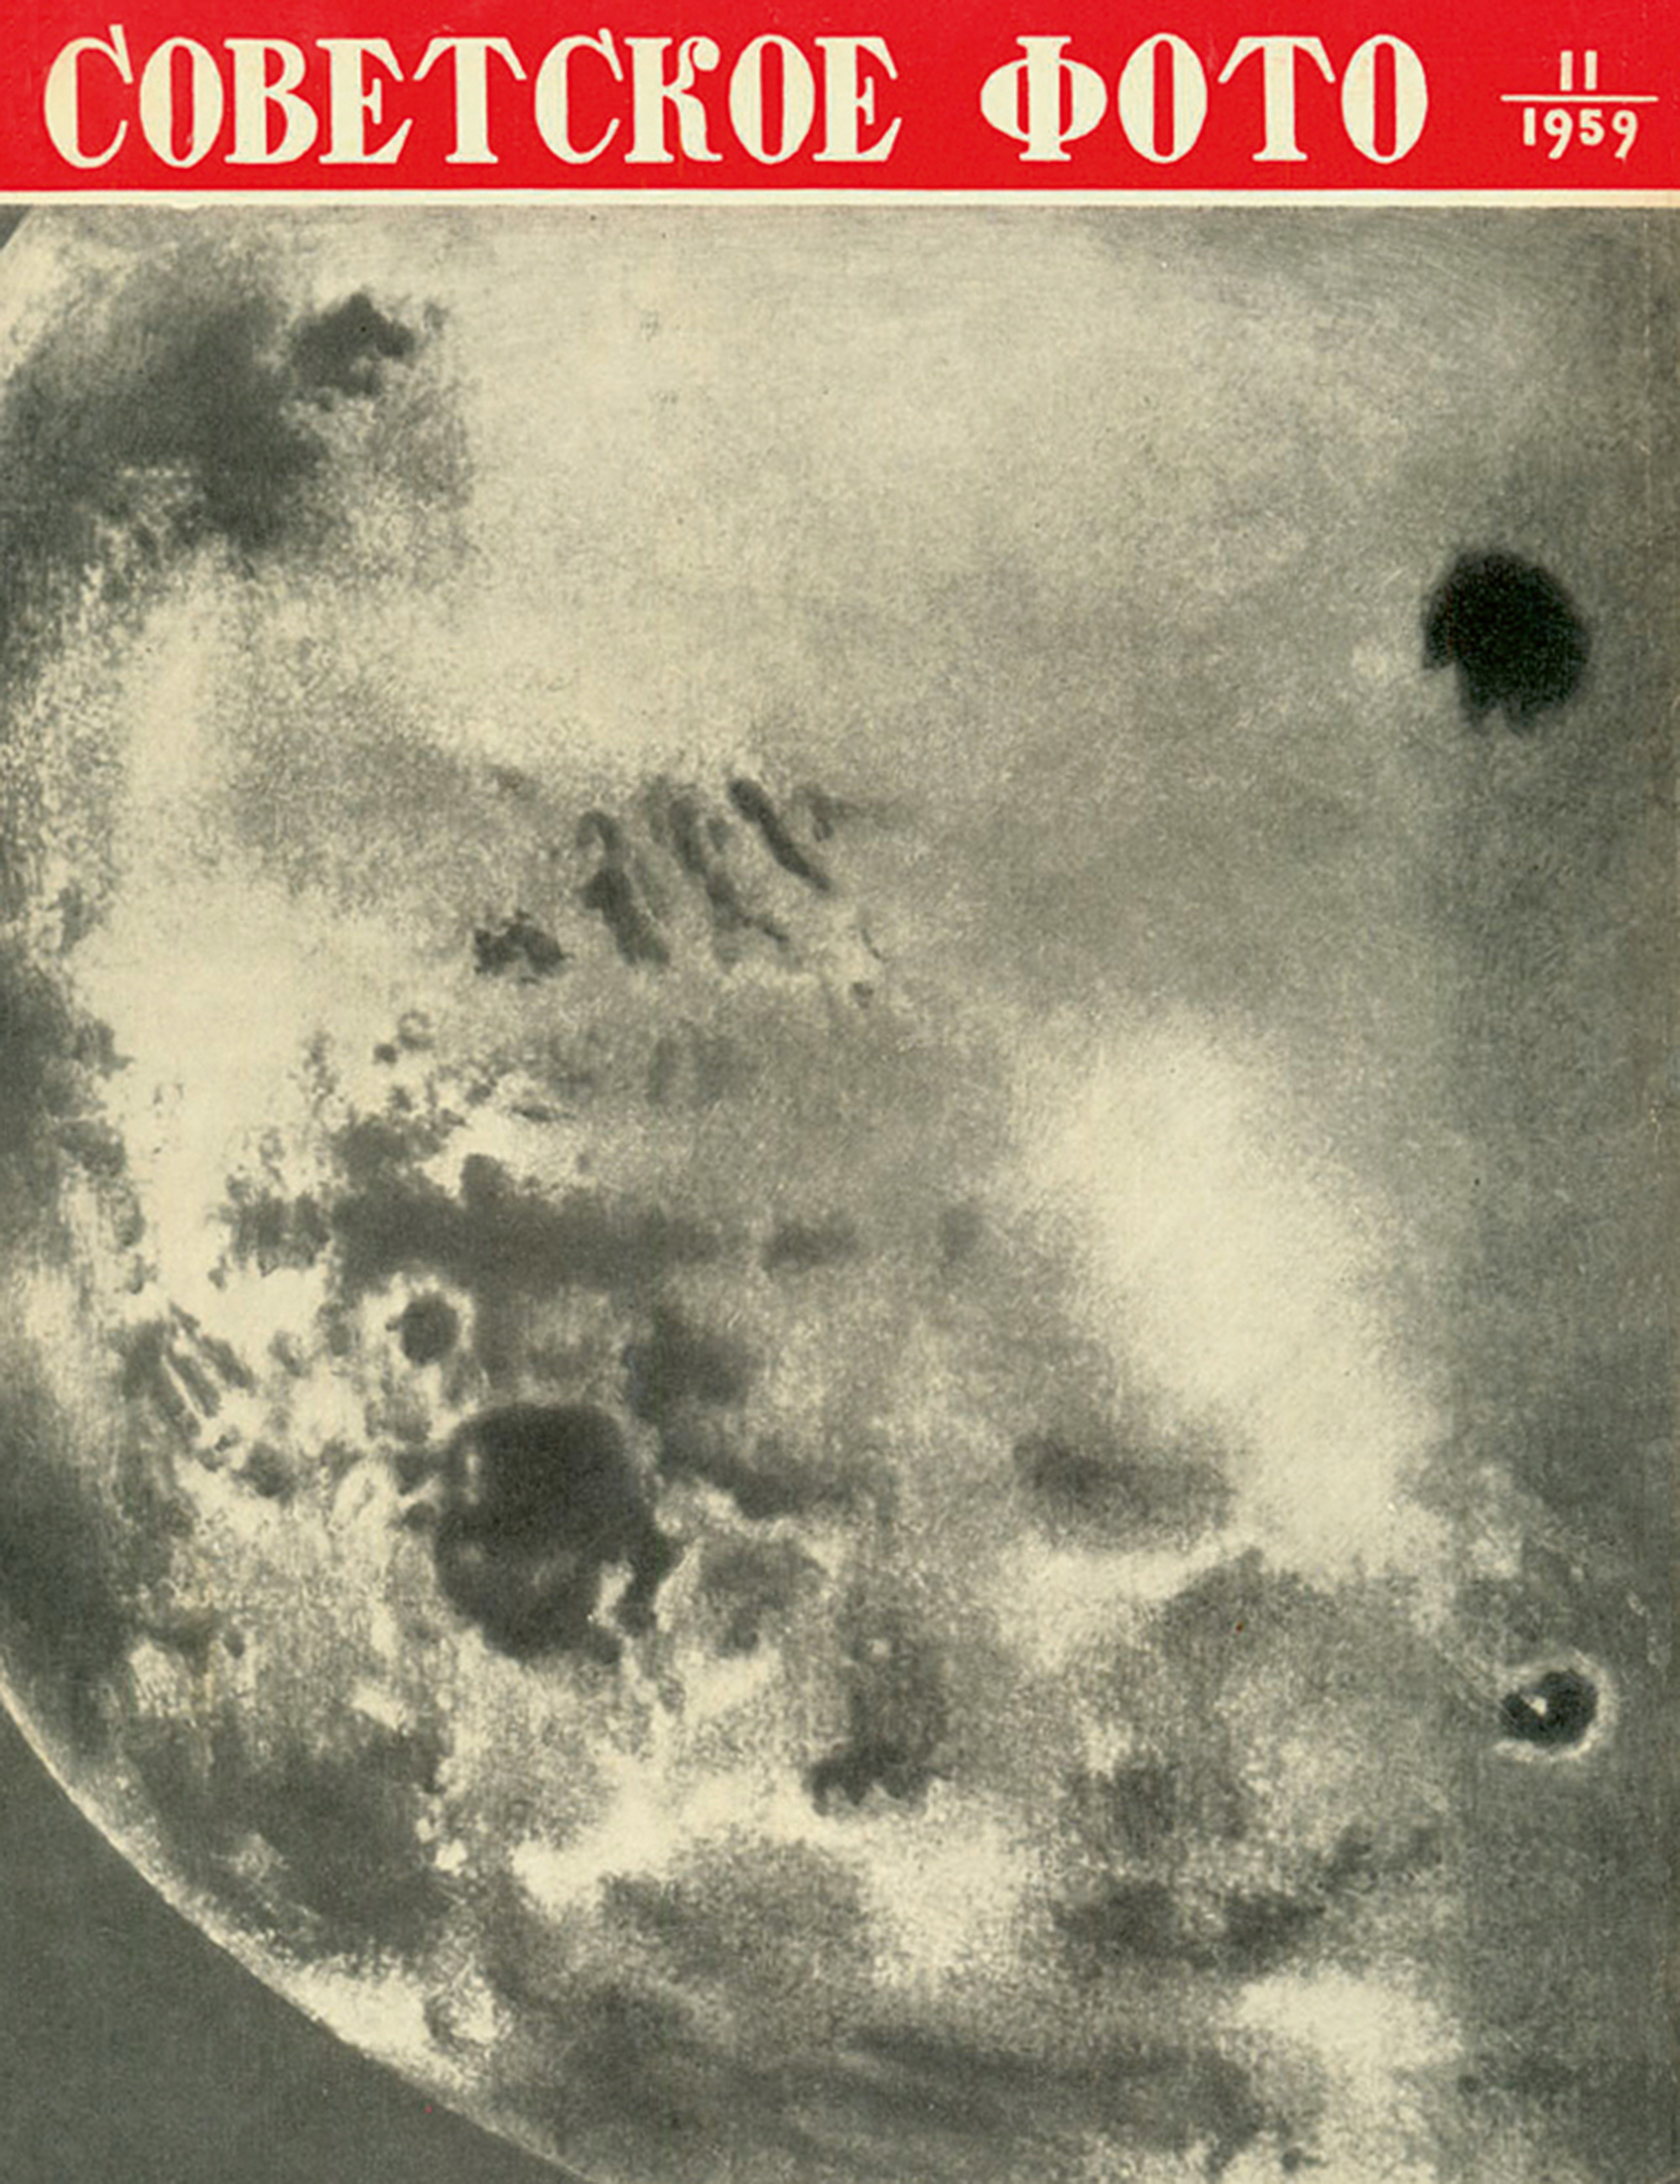 Первое изображение обратной стороны Луны Луна-3 1959